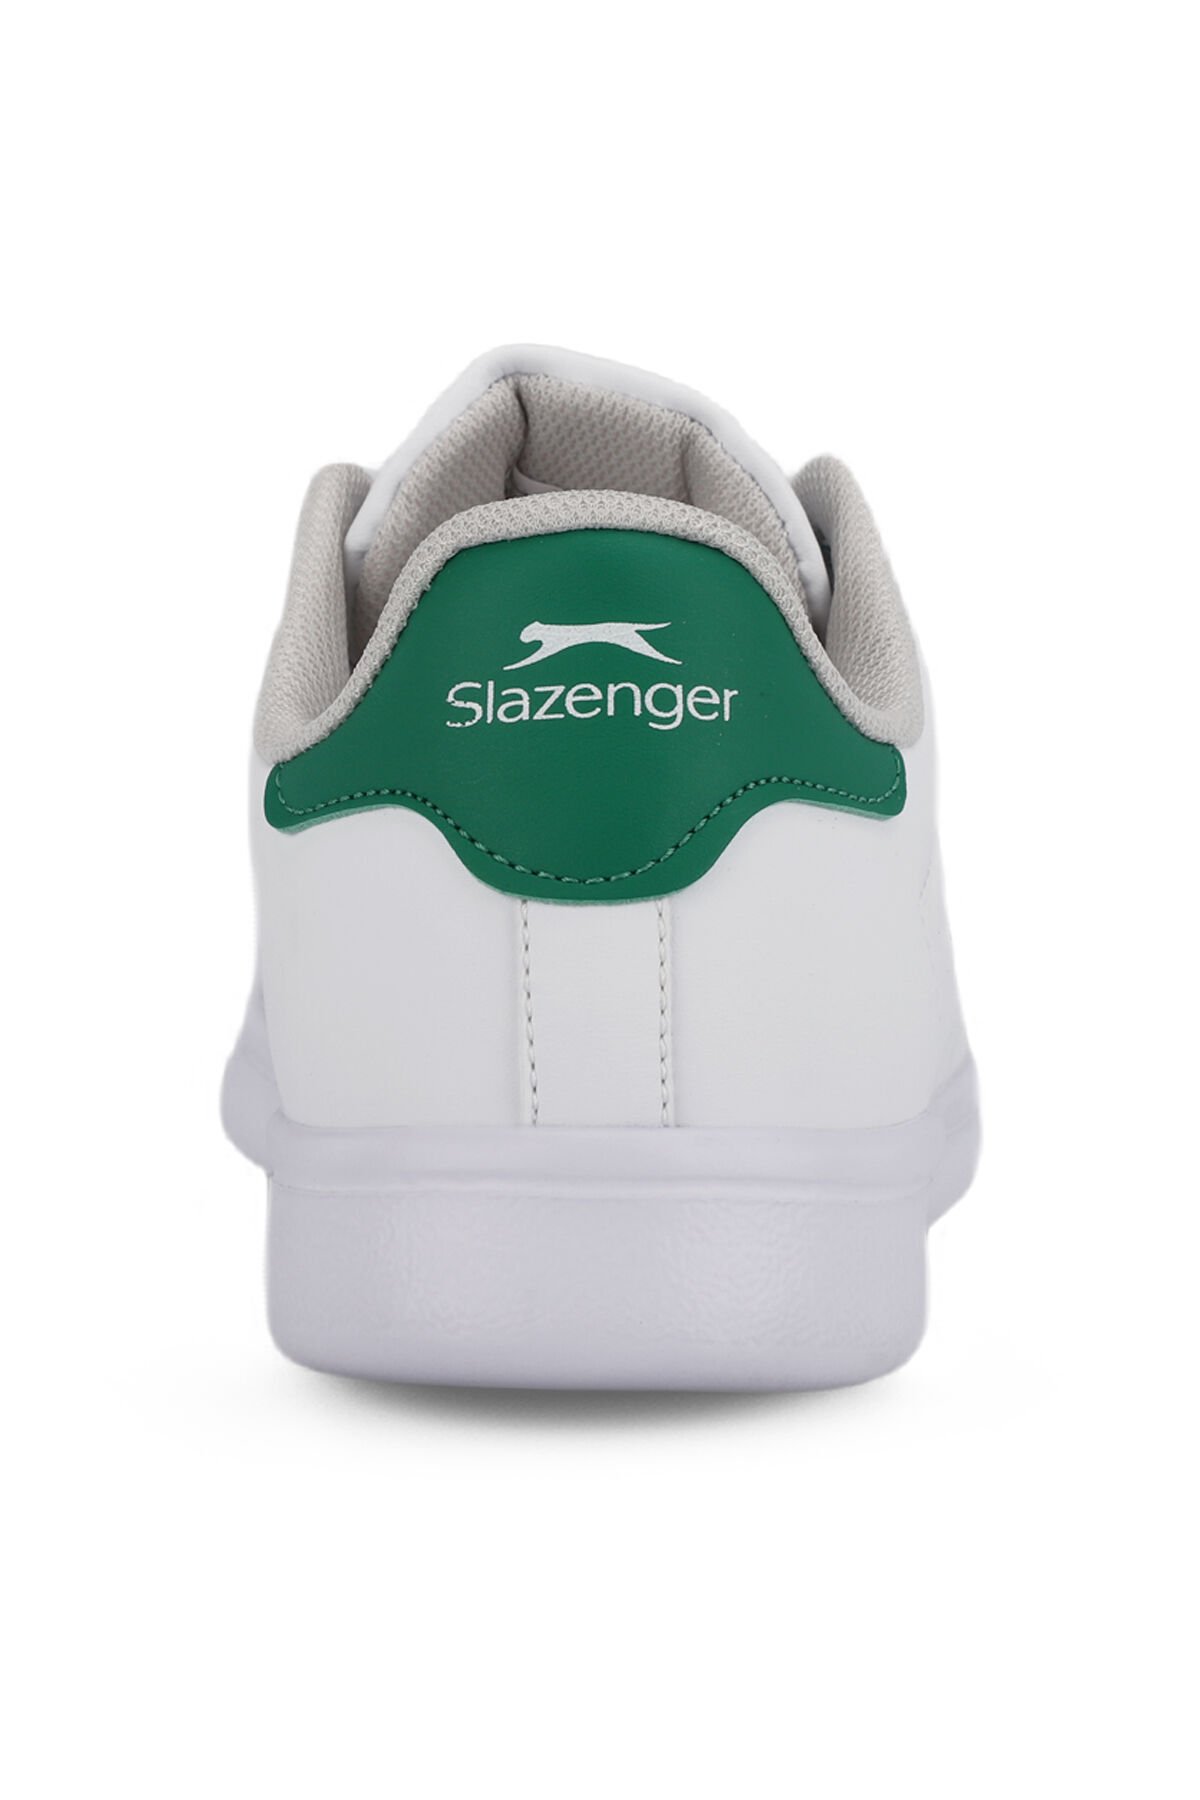 PIANO I Sneaker Kadın Ayakkabı Beyaz / Yeşil - Thumbnail